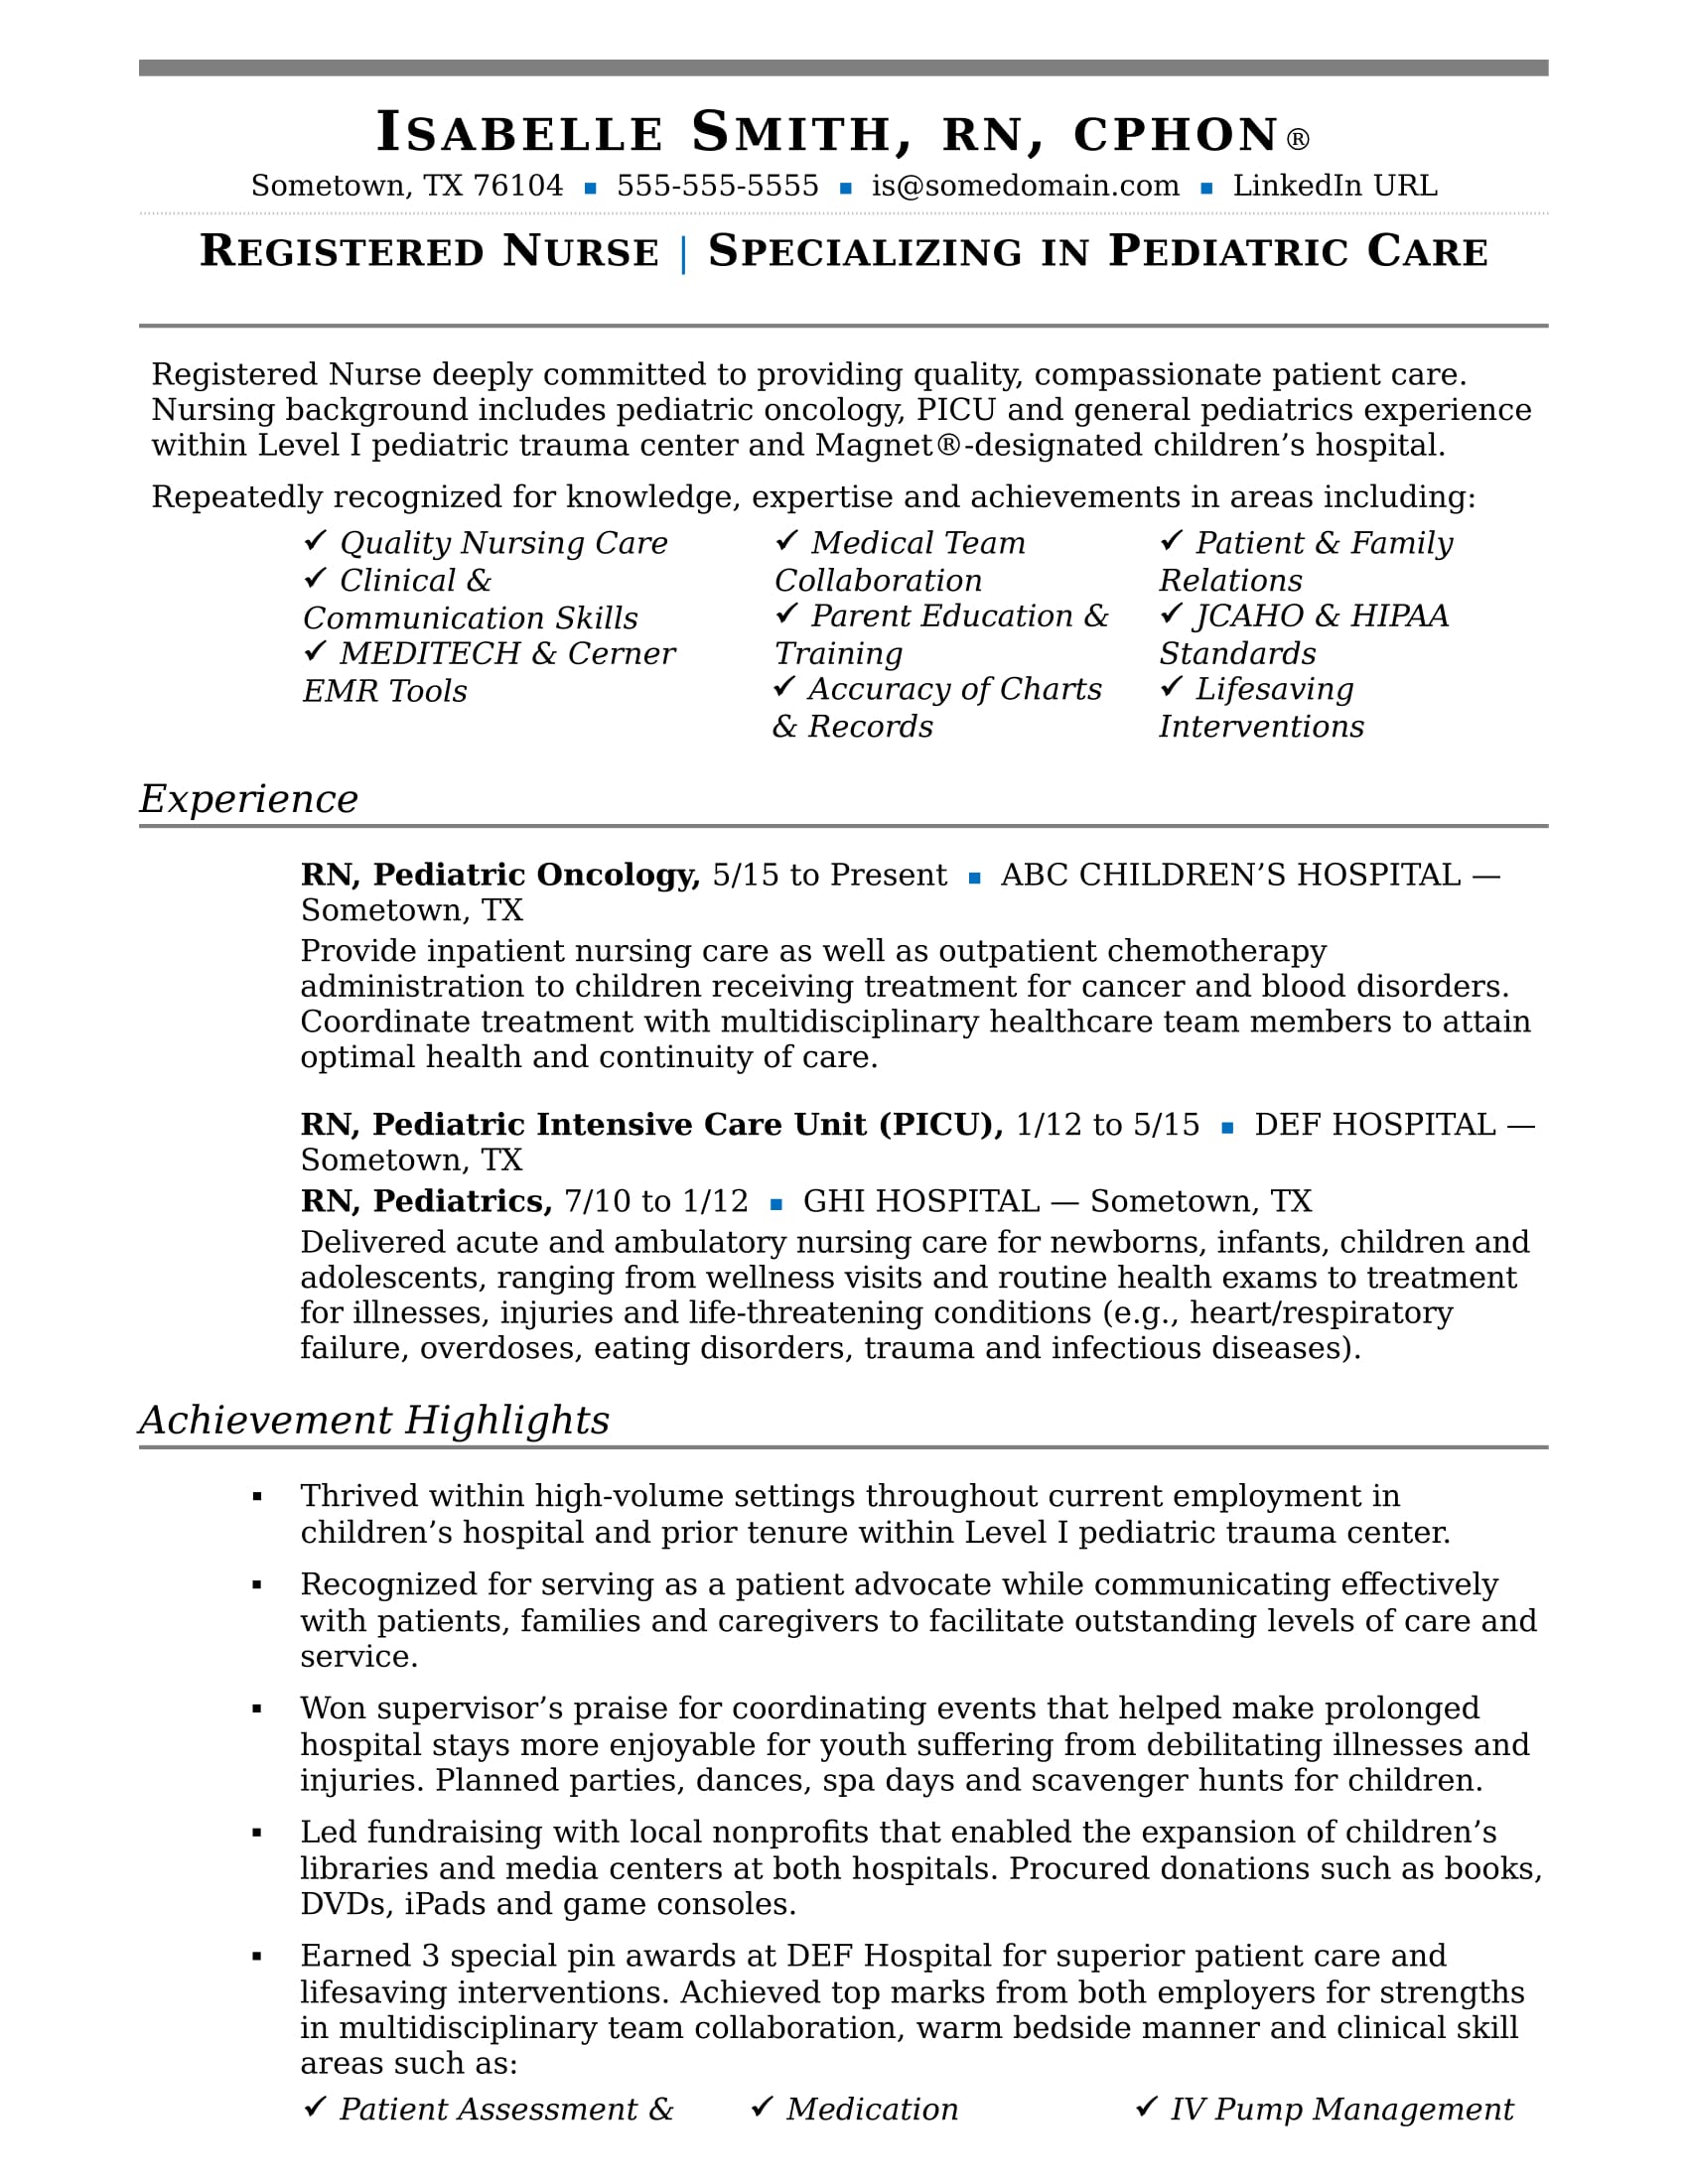 resume for nursing tutor